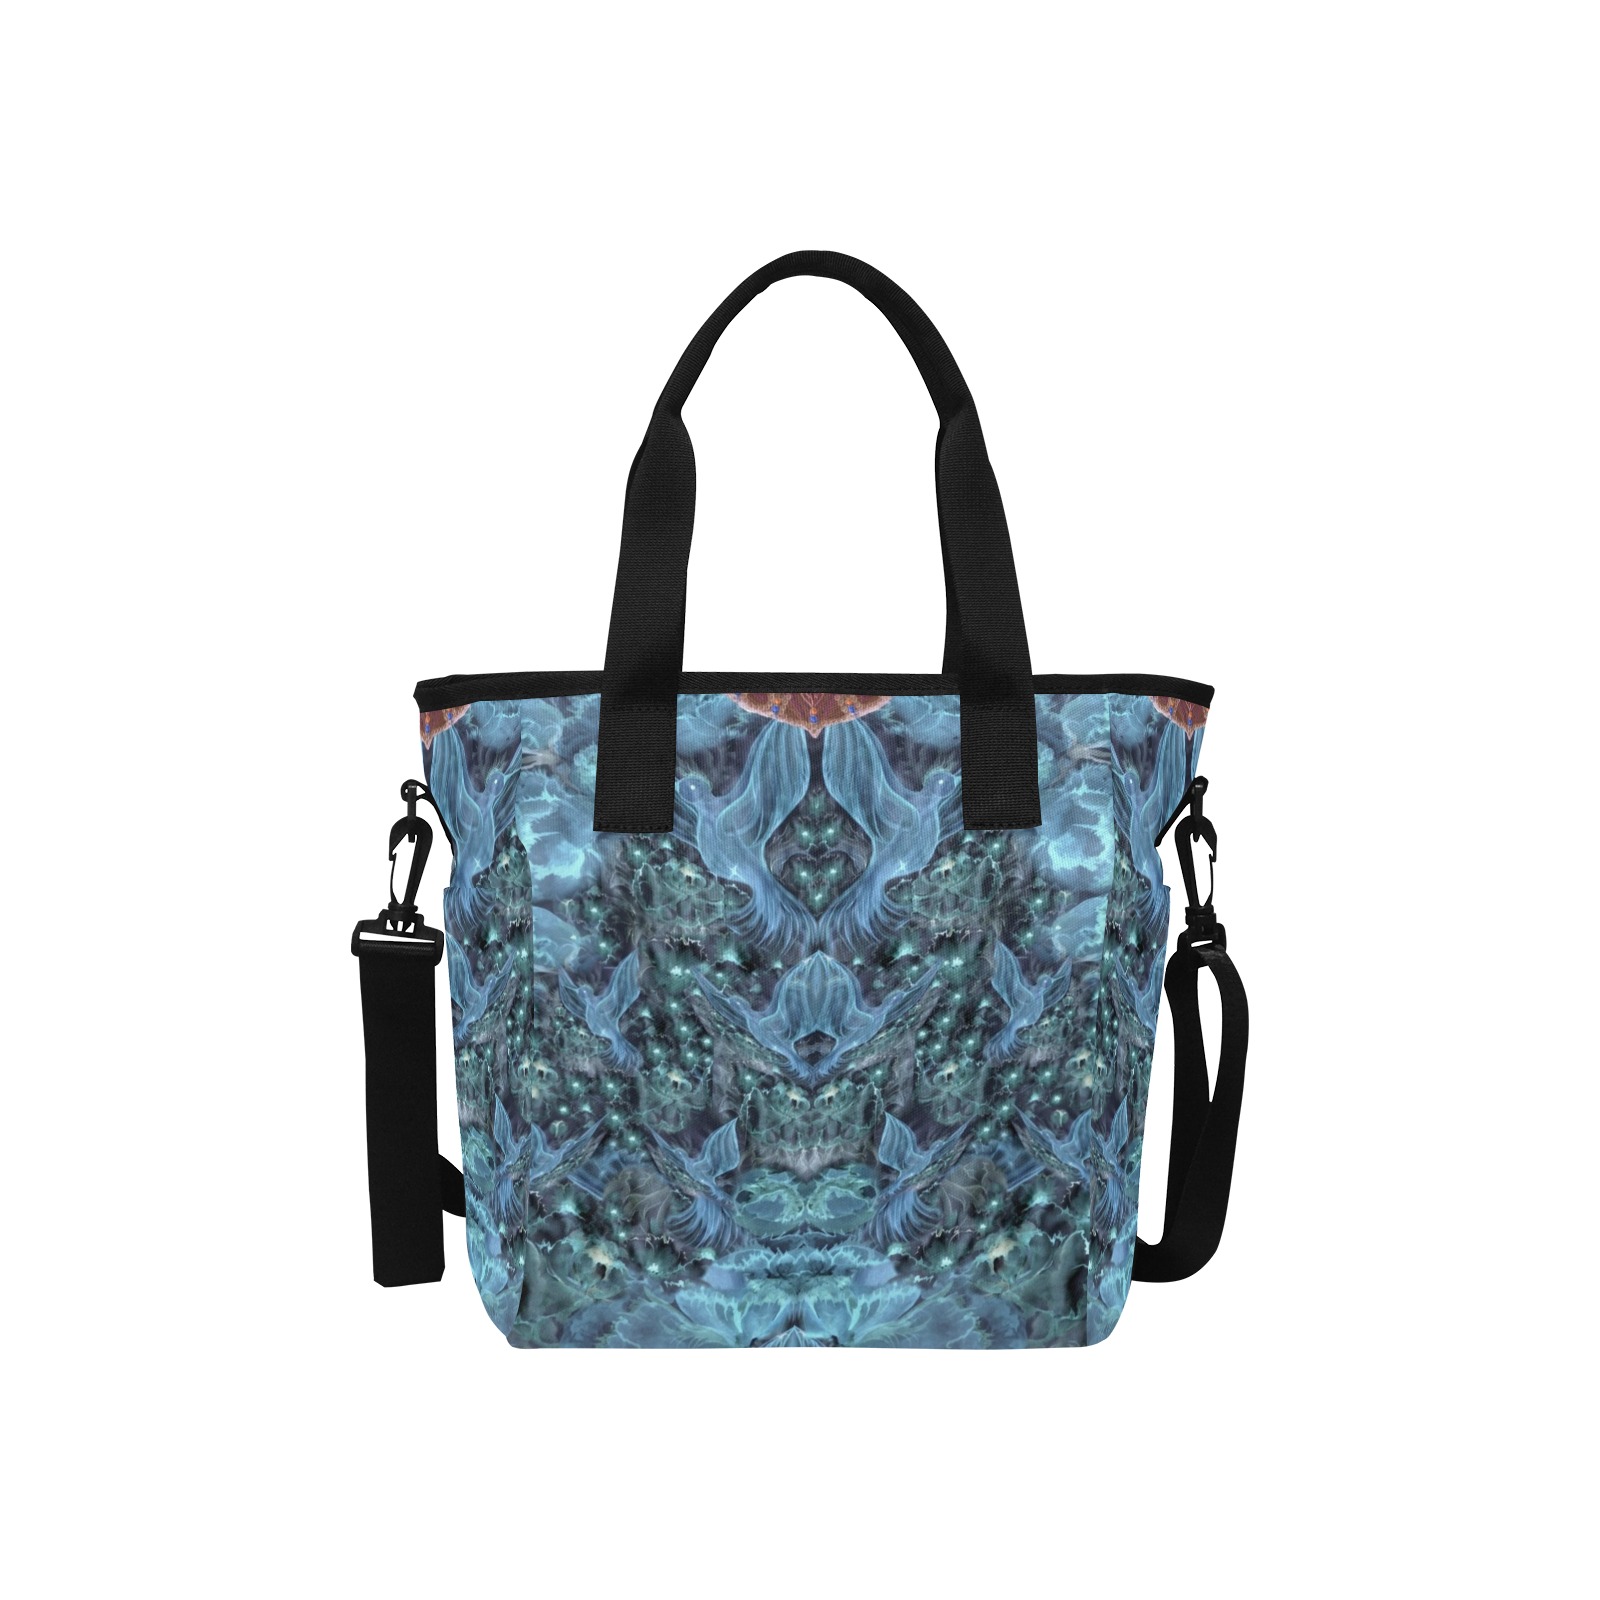 Nidhi Decembre 2014- pattern-5-2 neck back Tote Bag with Shoulder Strap (Model 1724)